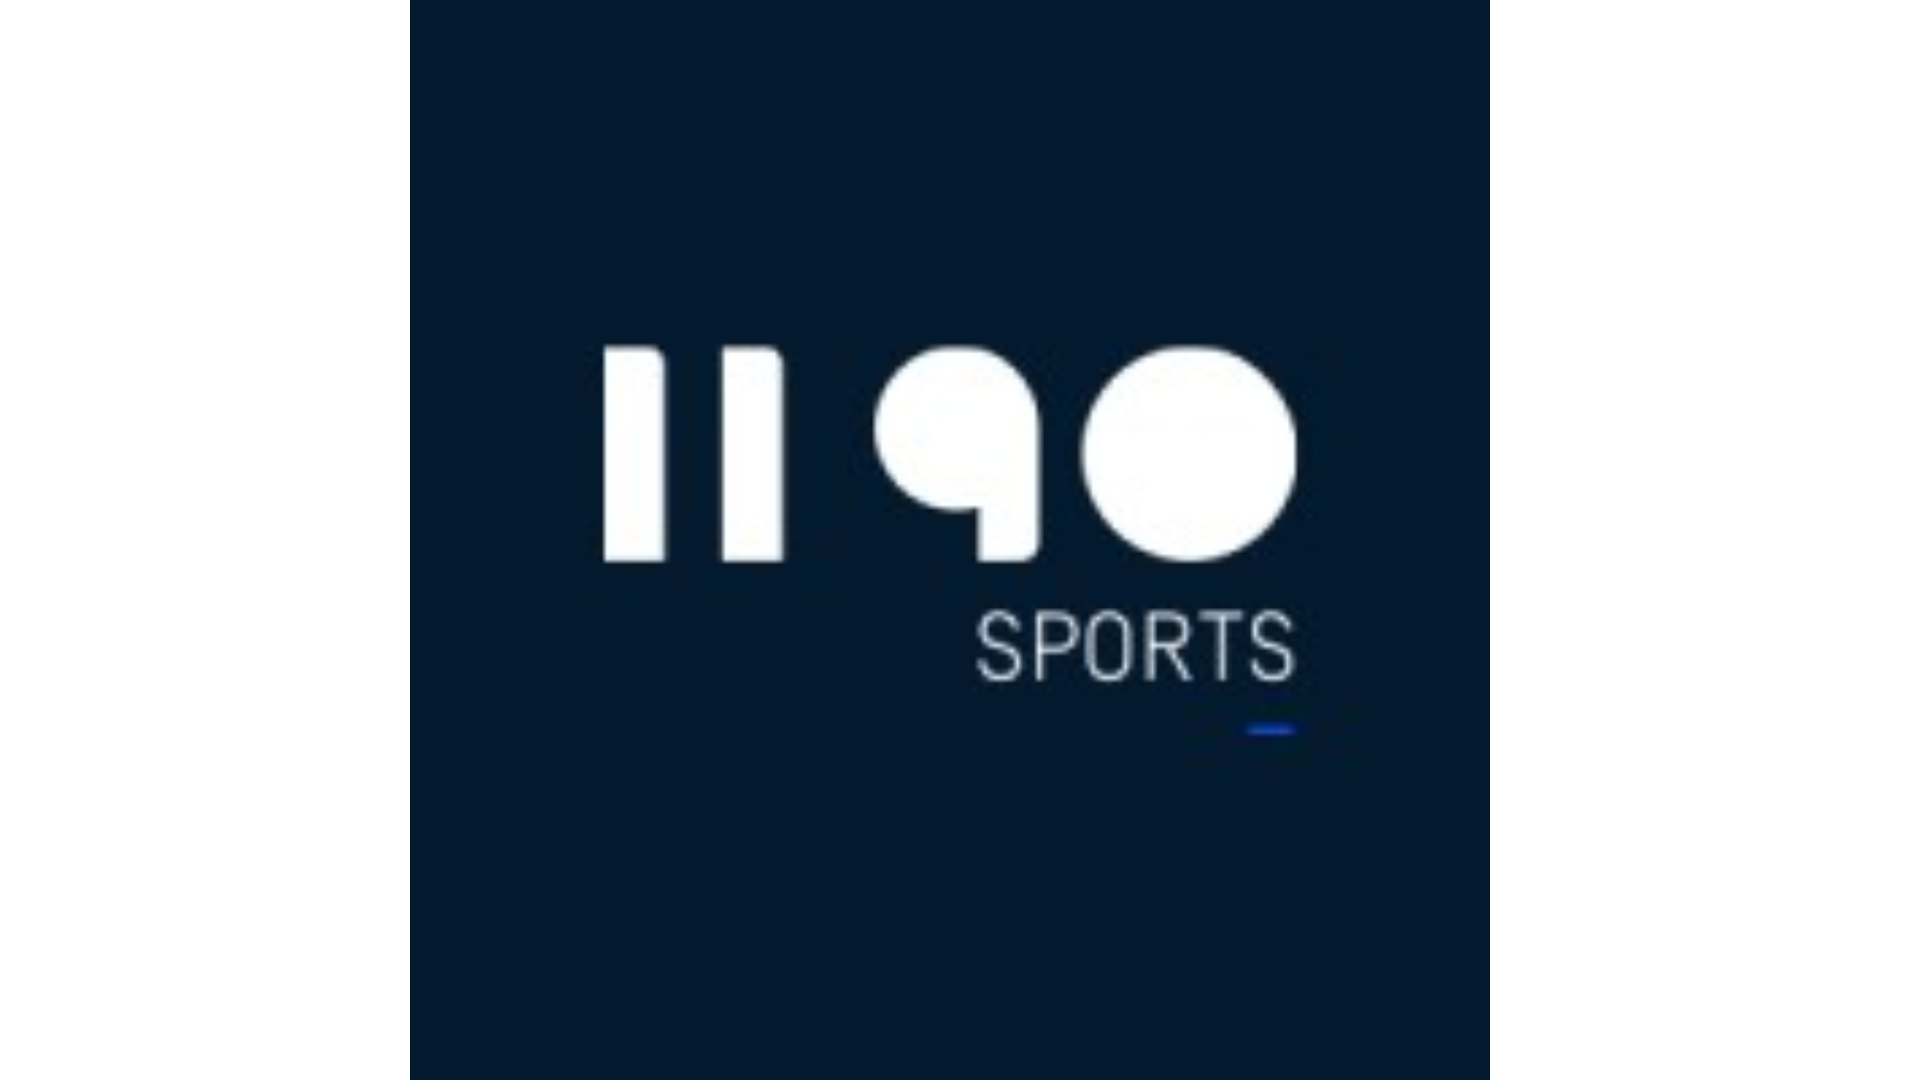 1190 Sports es la empresa que se presentó a la licitación por la transmisión de la Liga 1 Betsson. (Internet)